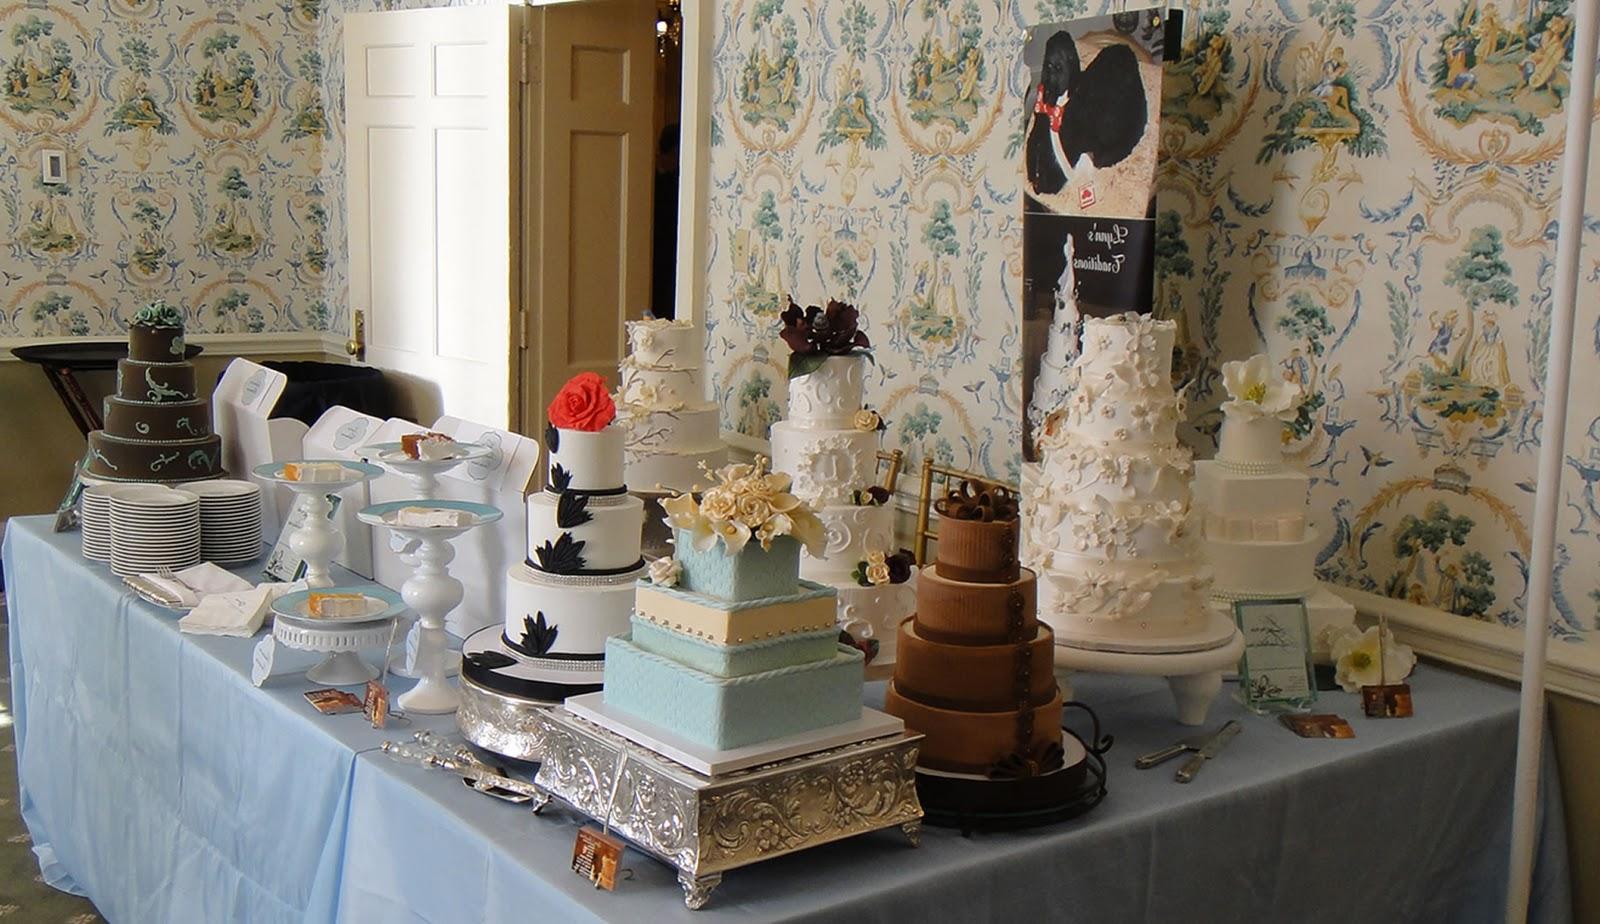 wedding cakes 2011